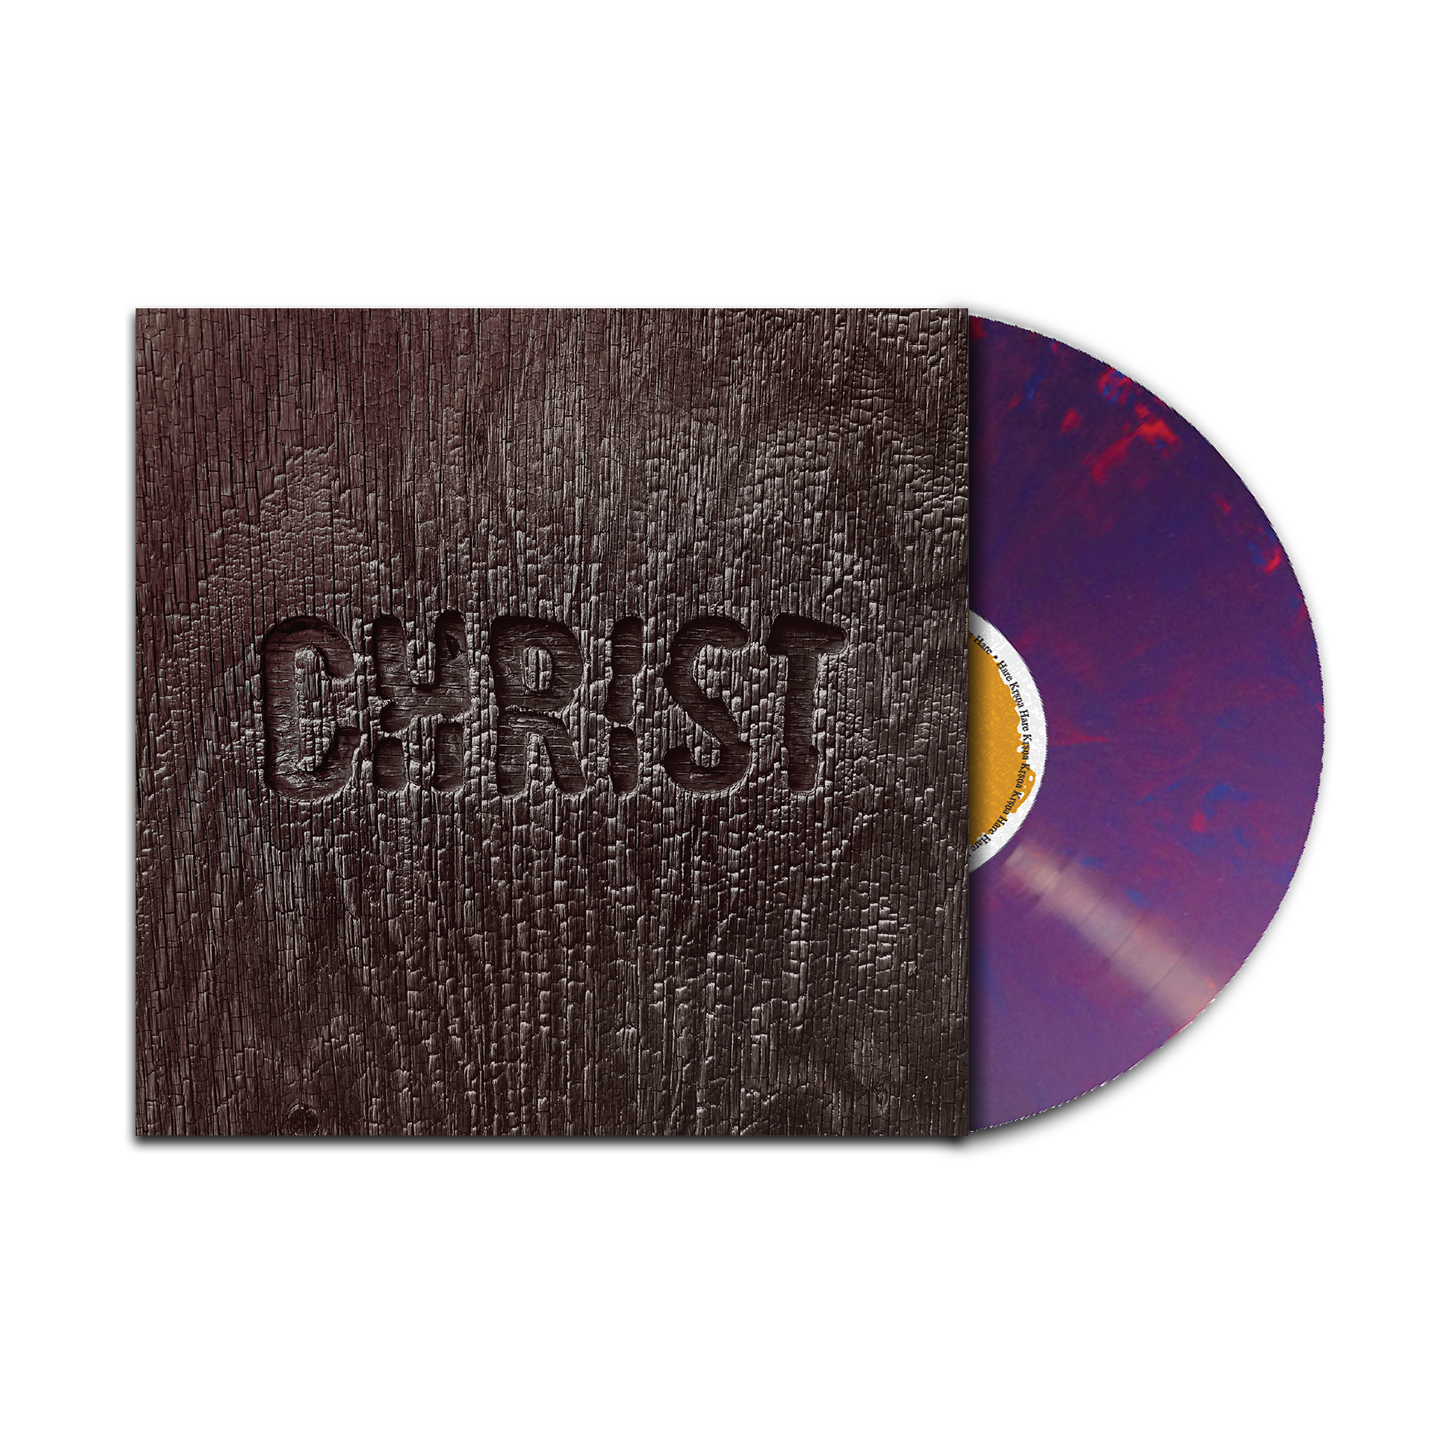 Christ - Complete - 2XLP